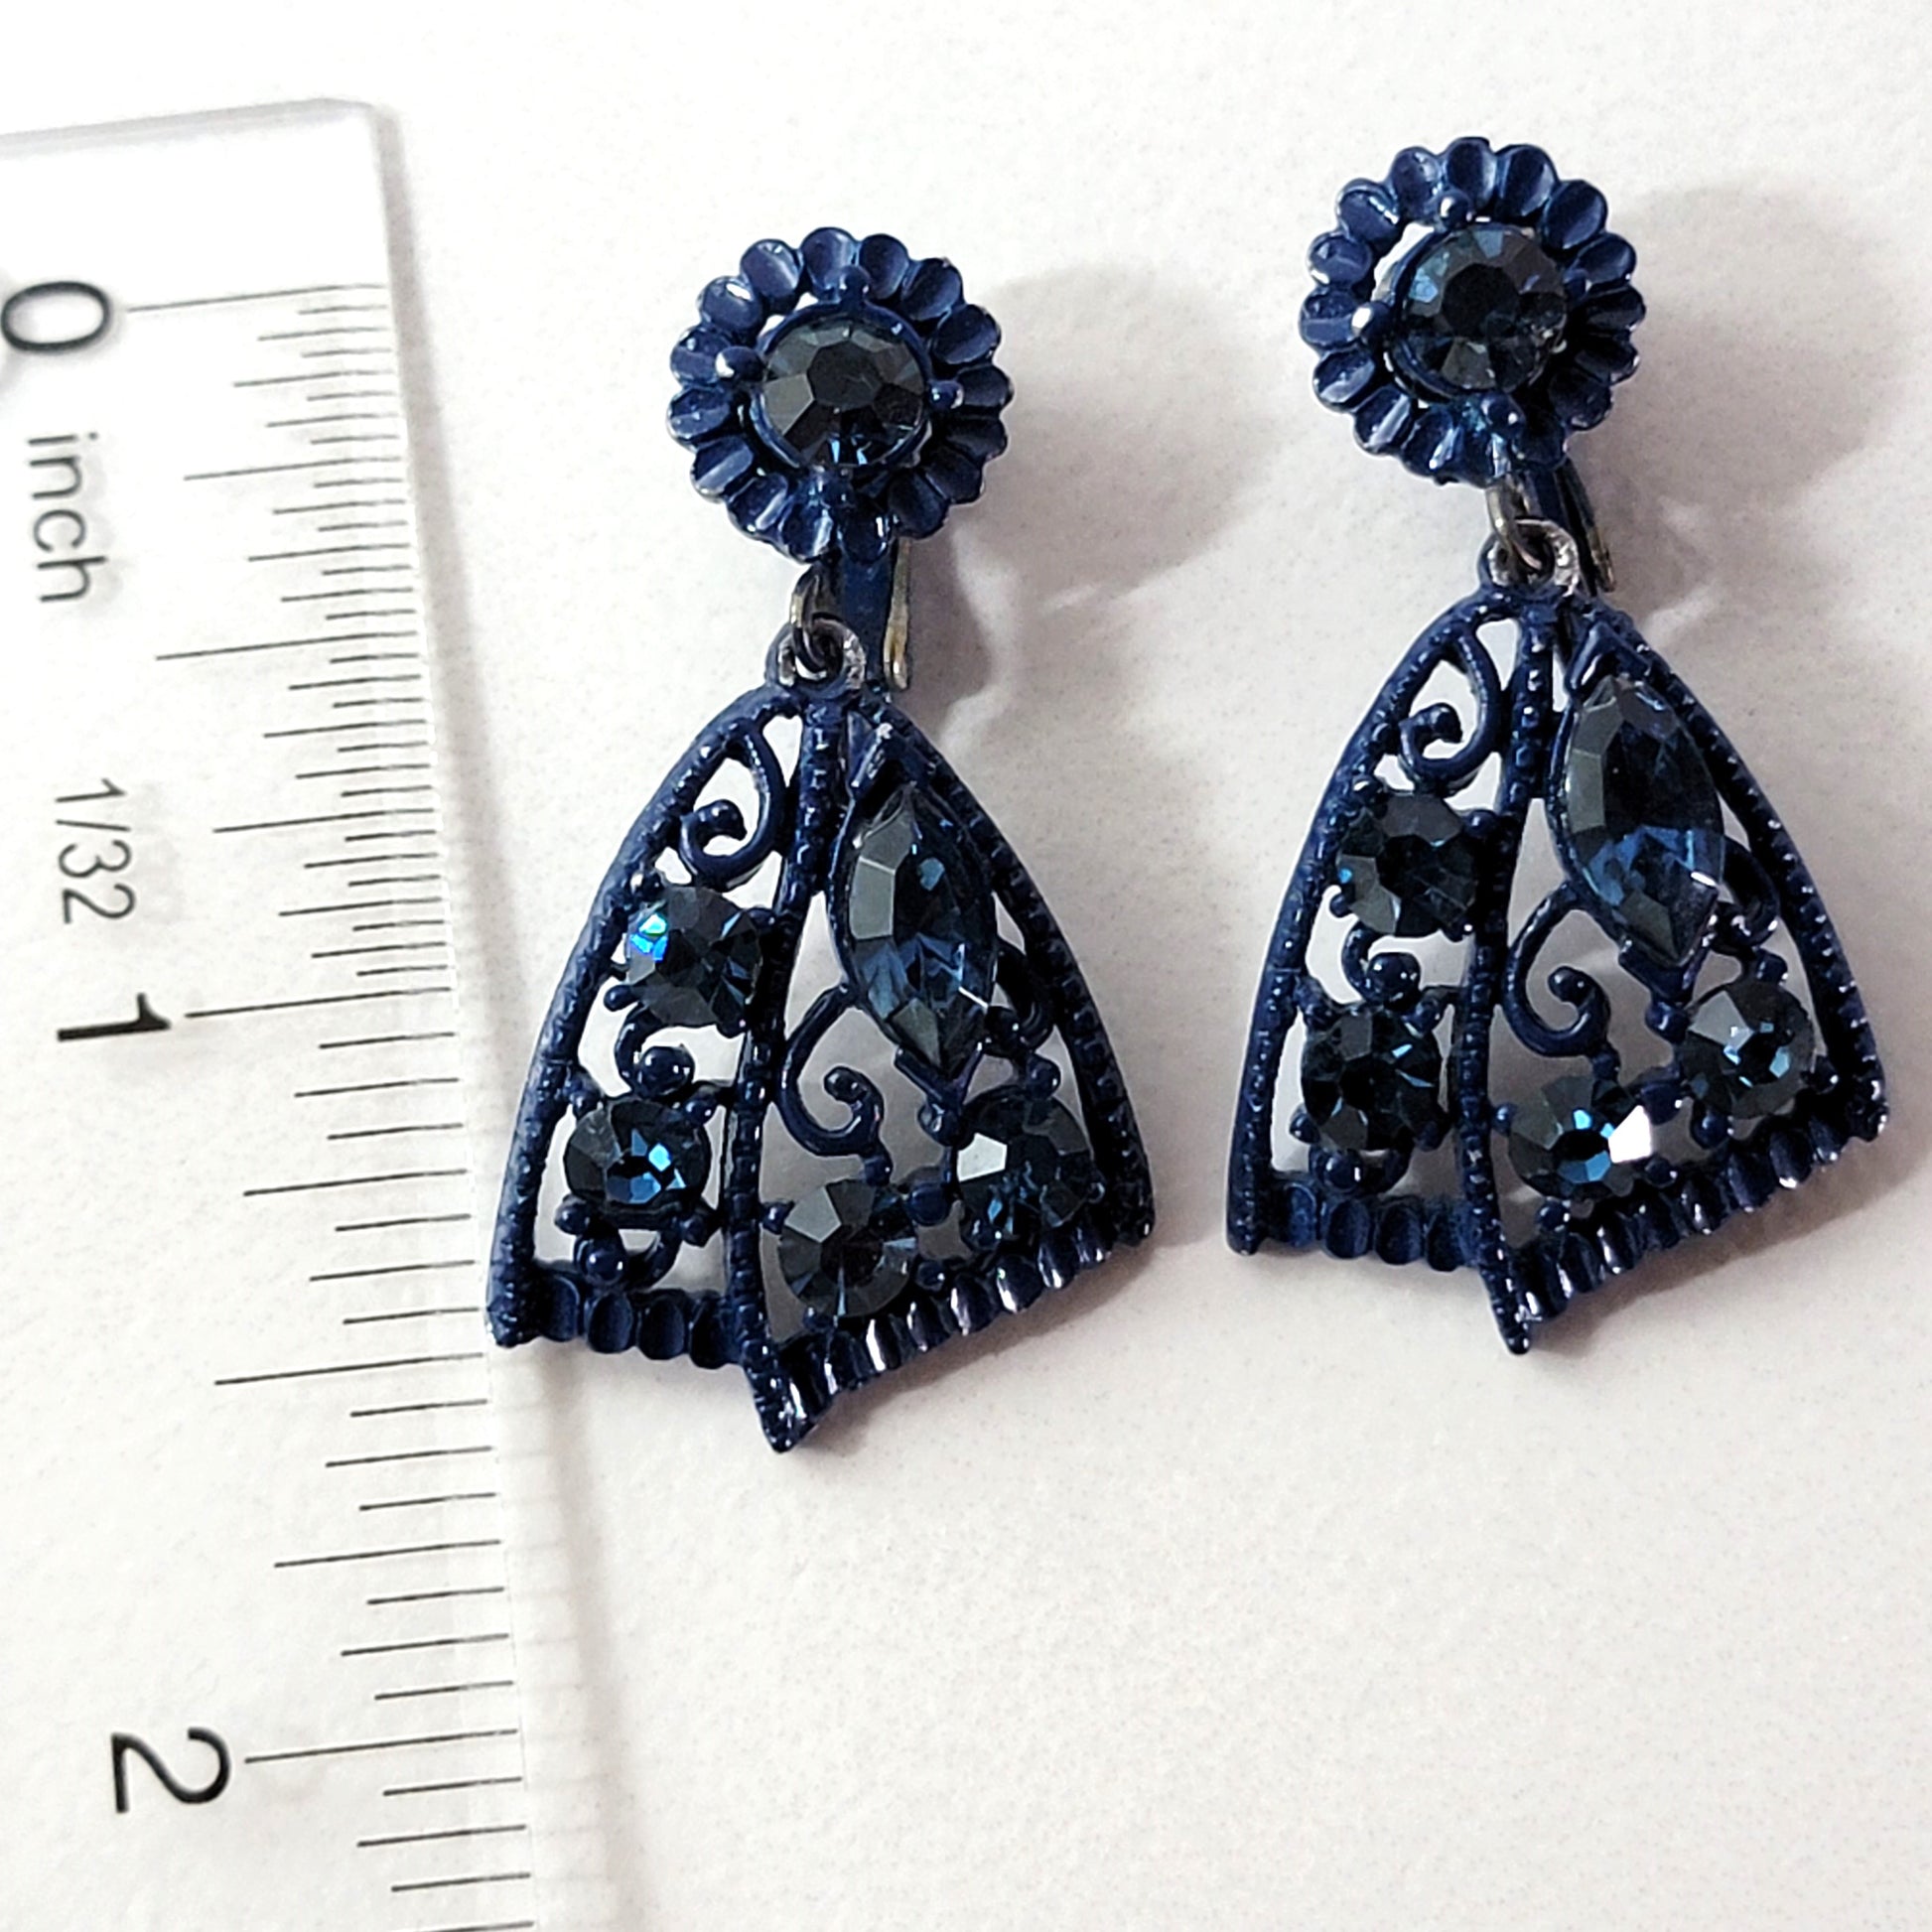 Blue rhinestone dangle earrings with ruler.